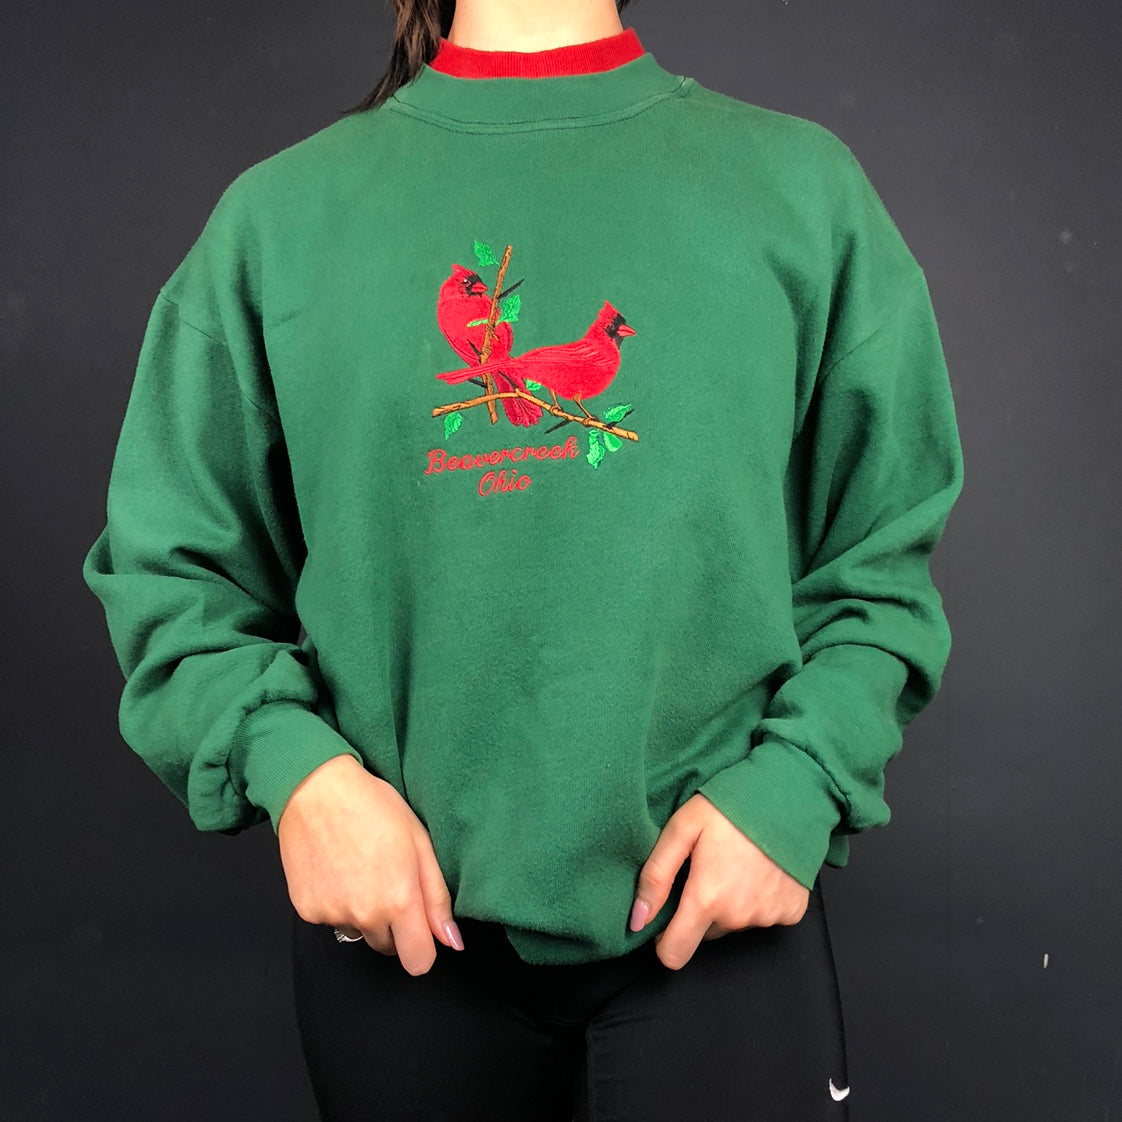 Unbranded Beavercreek Ohio Sweatshirt